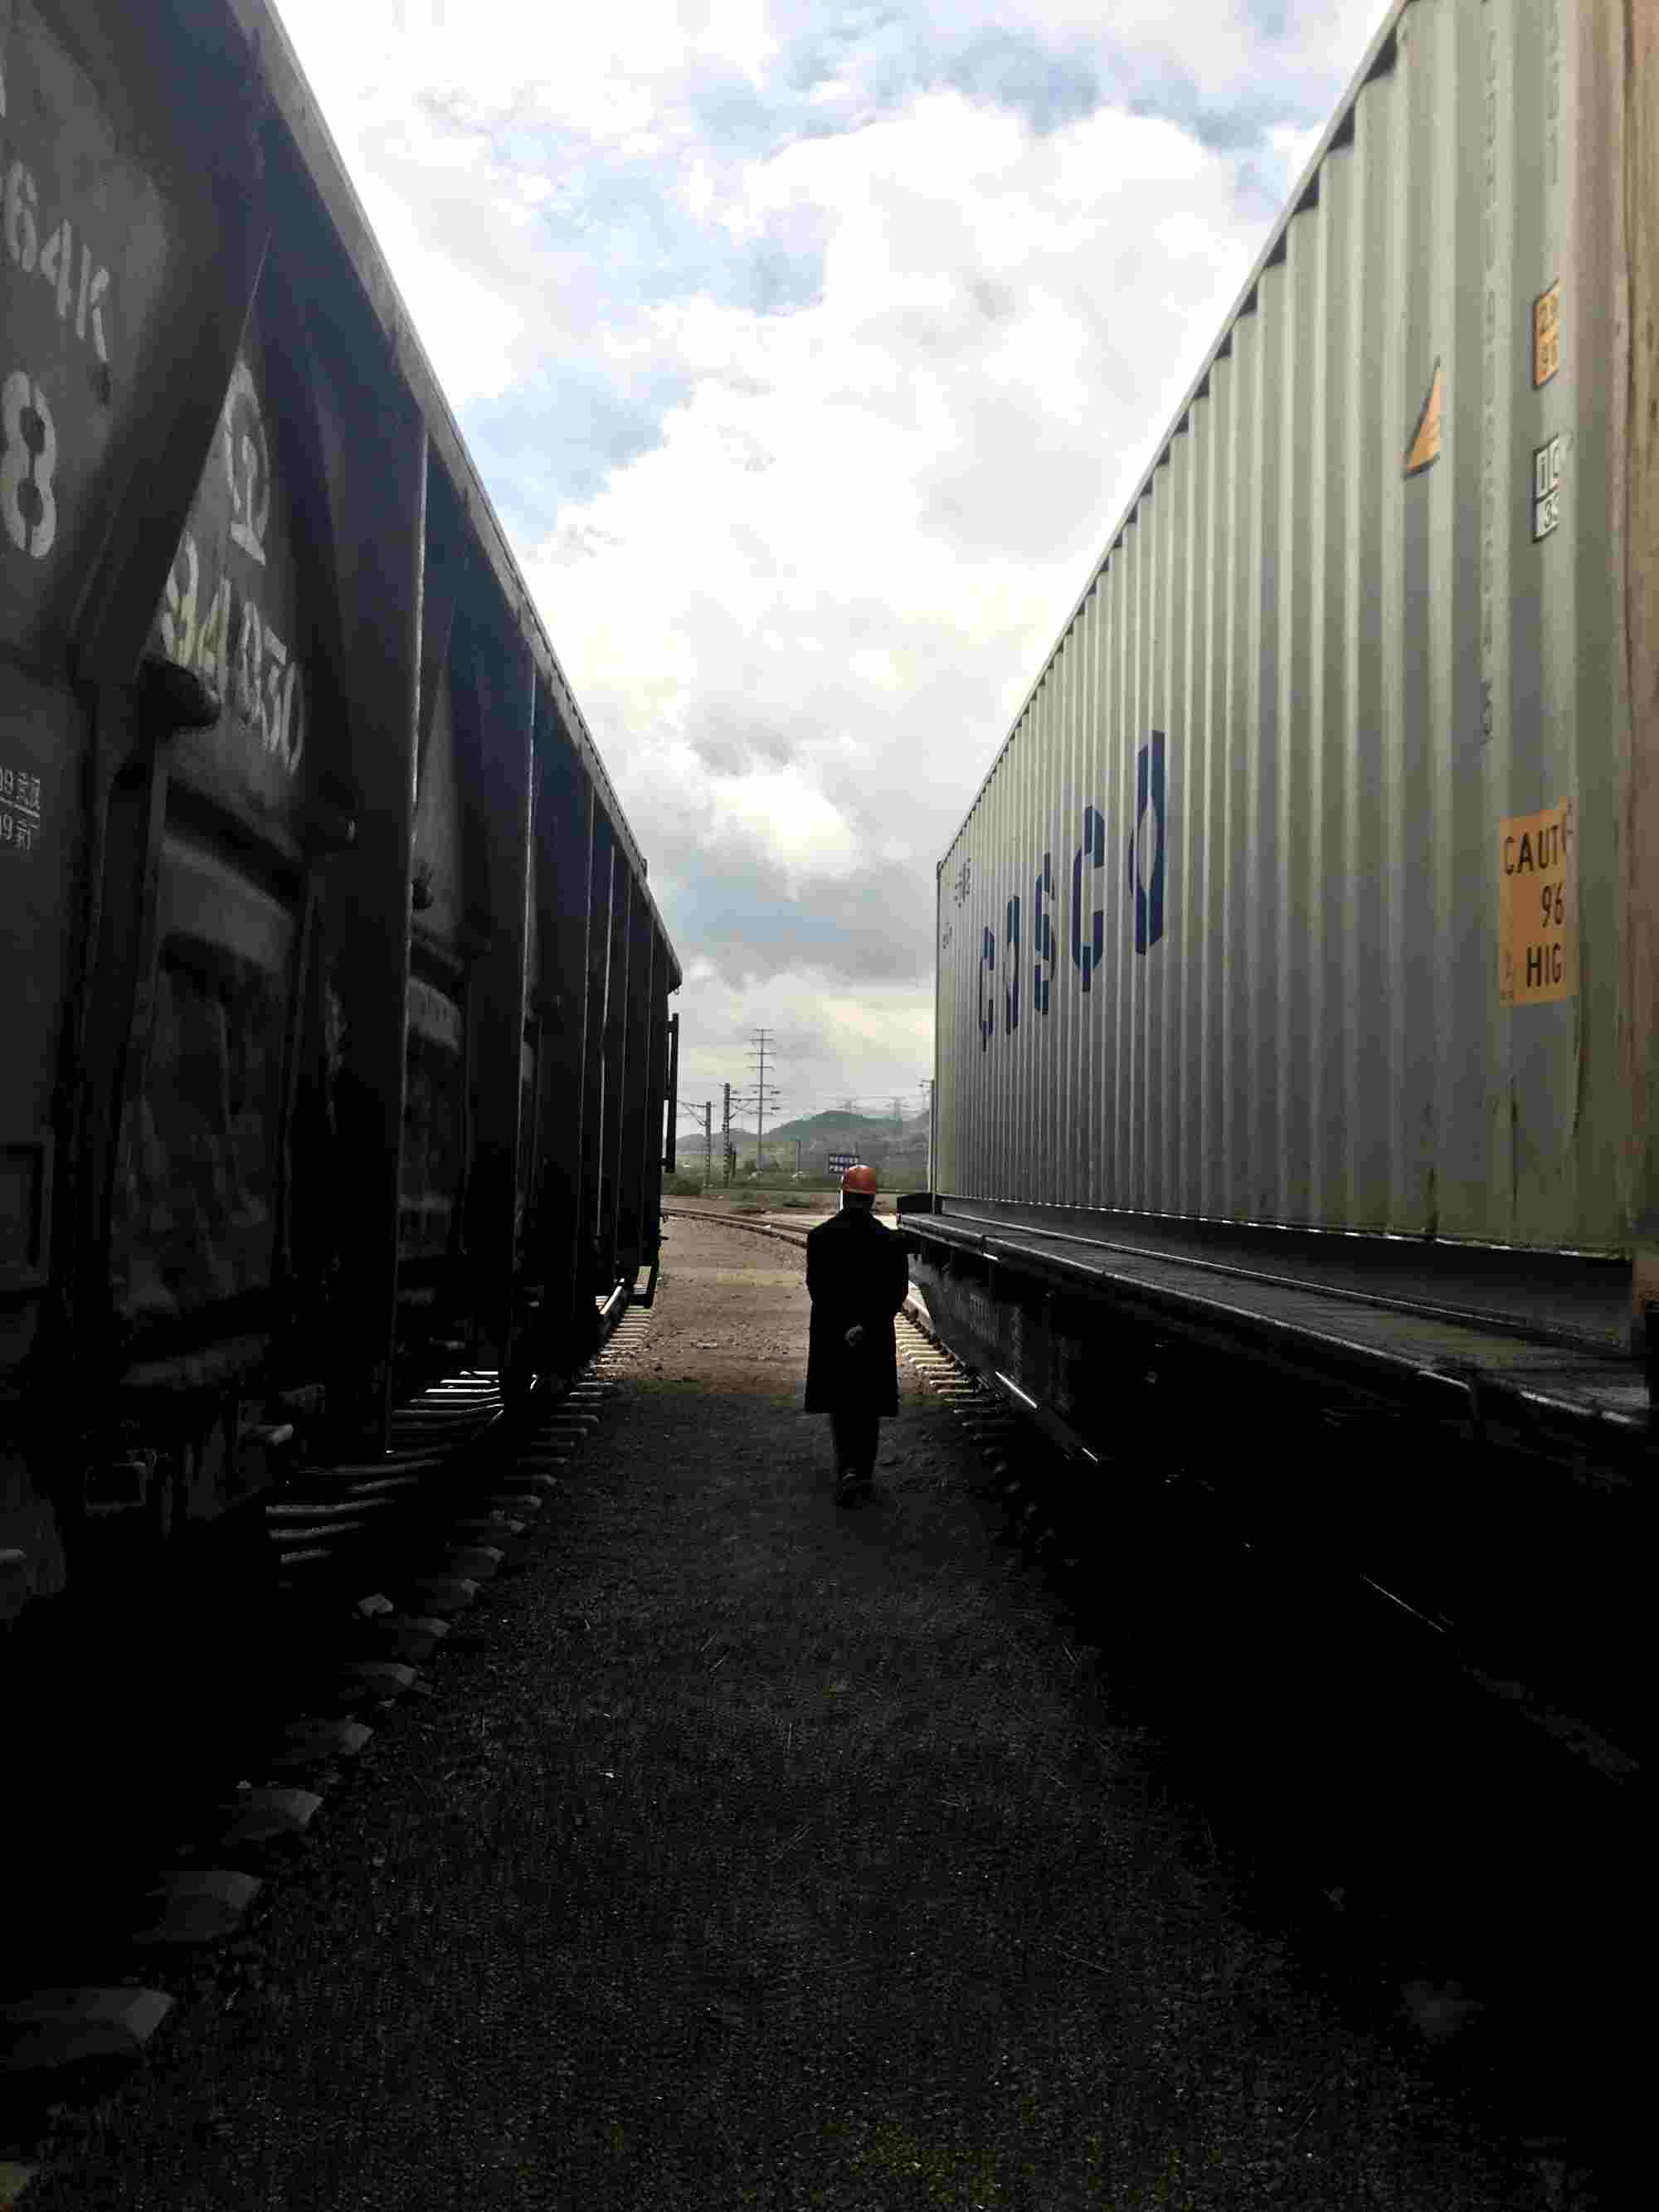 Le commerce Chine-UE stimulé par la liaison ferroviaire intercontinentale